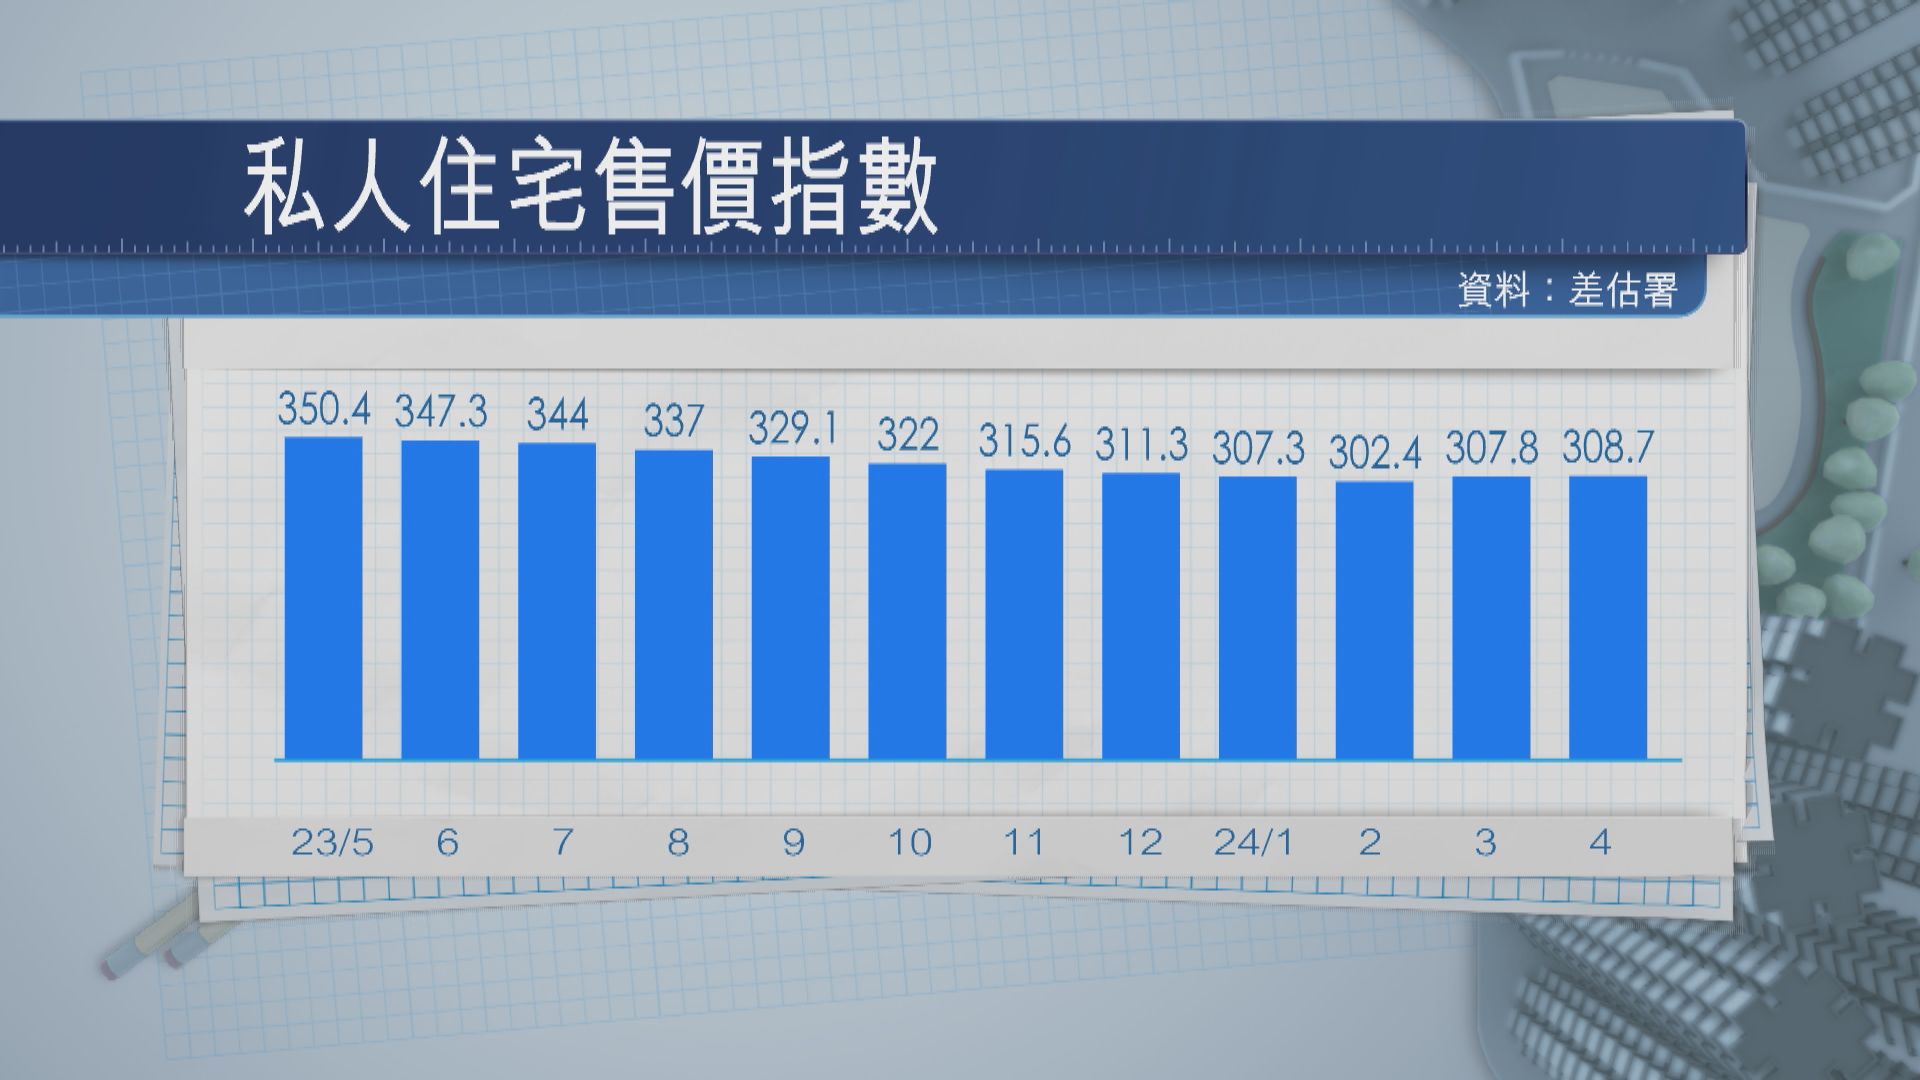 本港4月私樓樓價升0.29% 連升兩個月